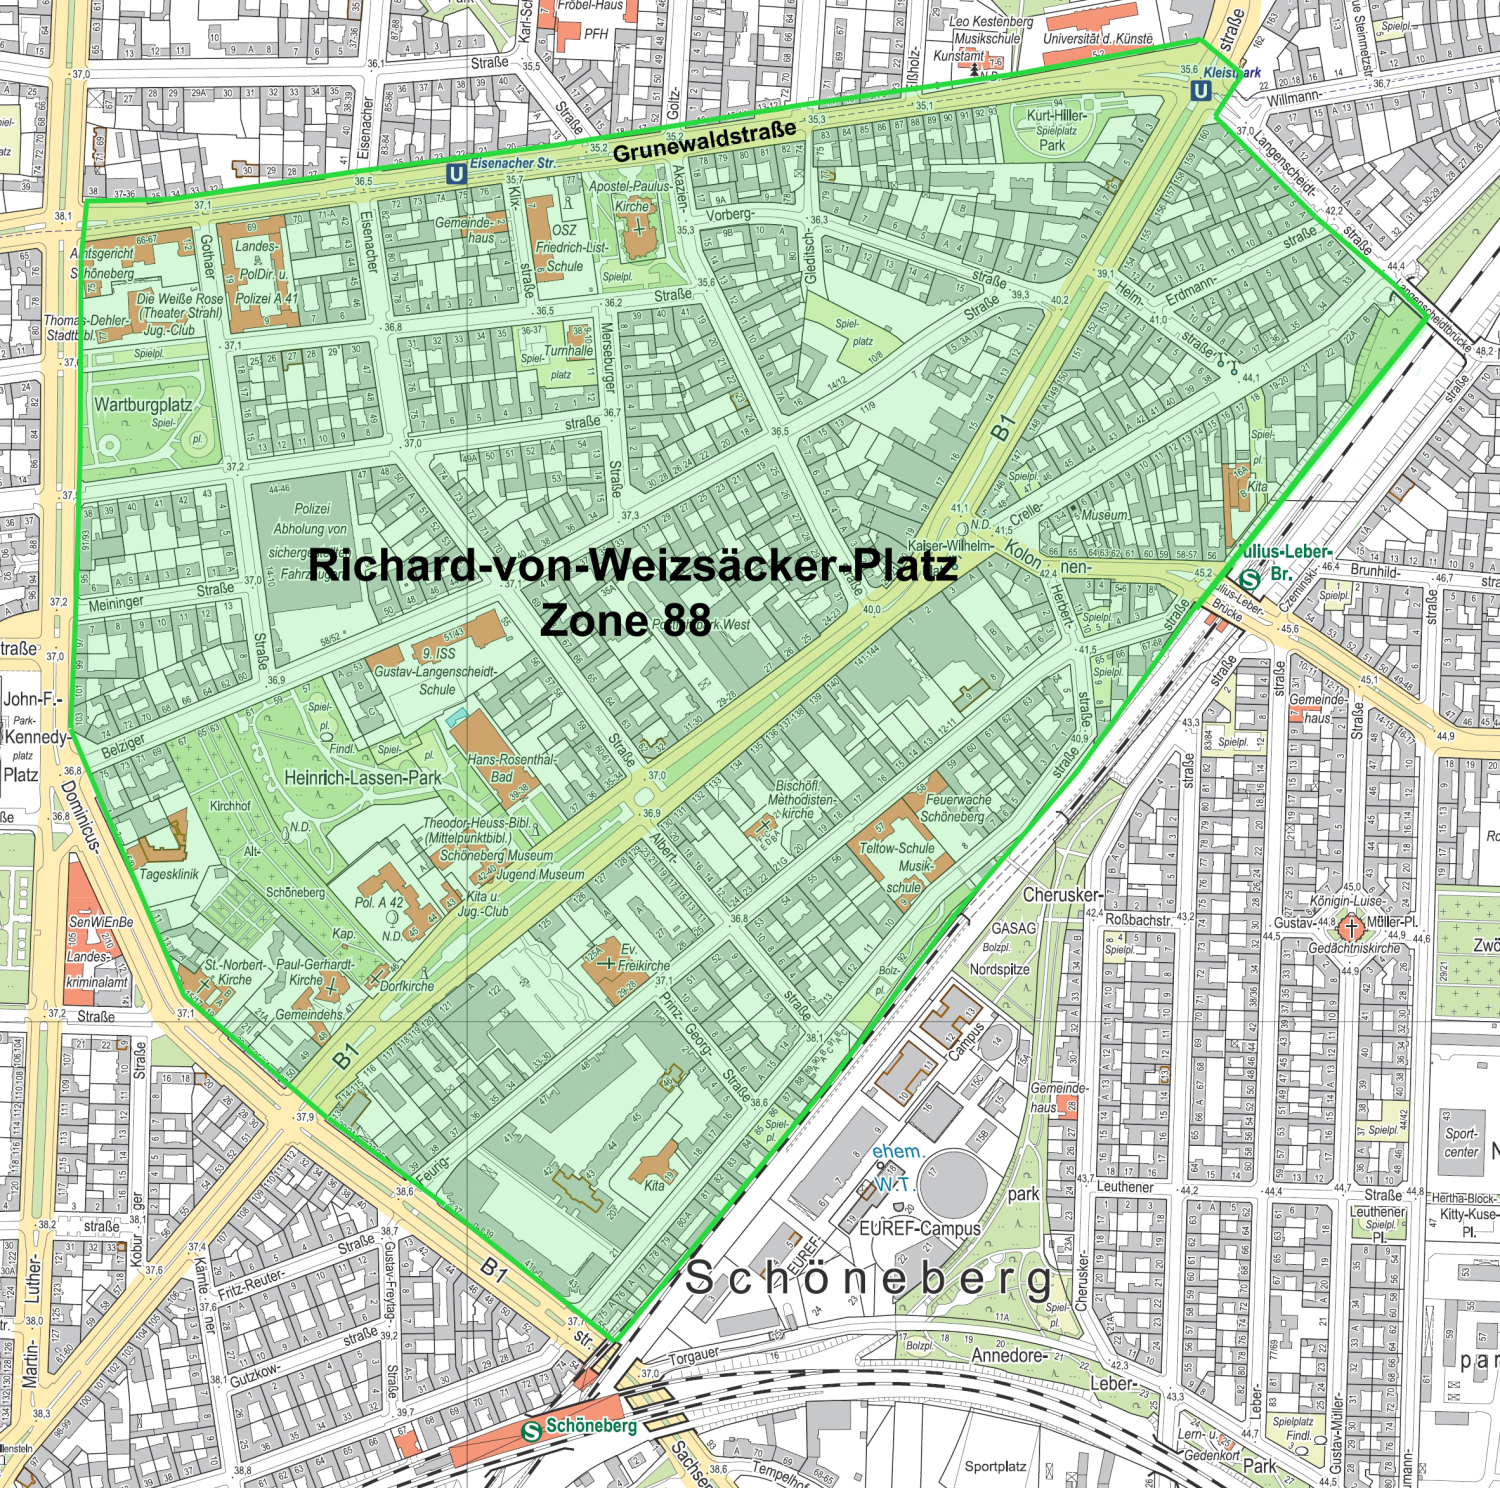 Eine Karte mit einem markierten Bereich. Der Bereich ist gekennzeichnet als Richard-von-Weizsäcker-Platz Zone 88